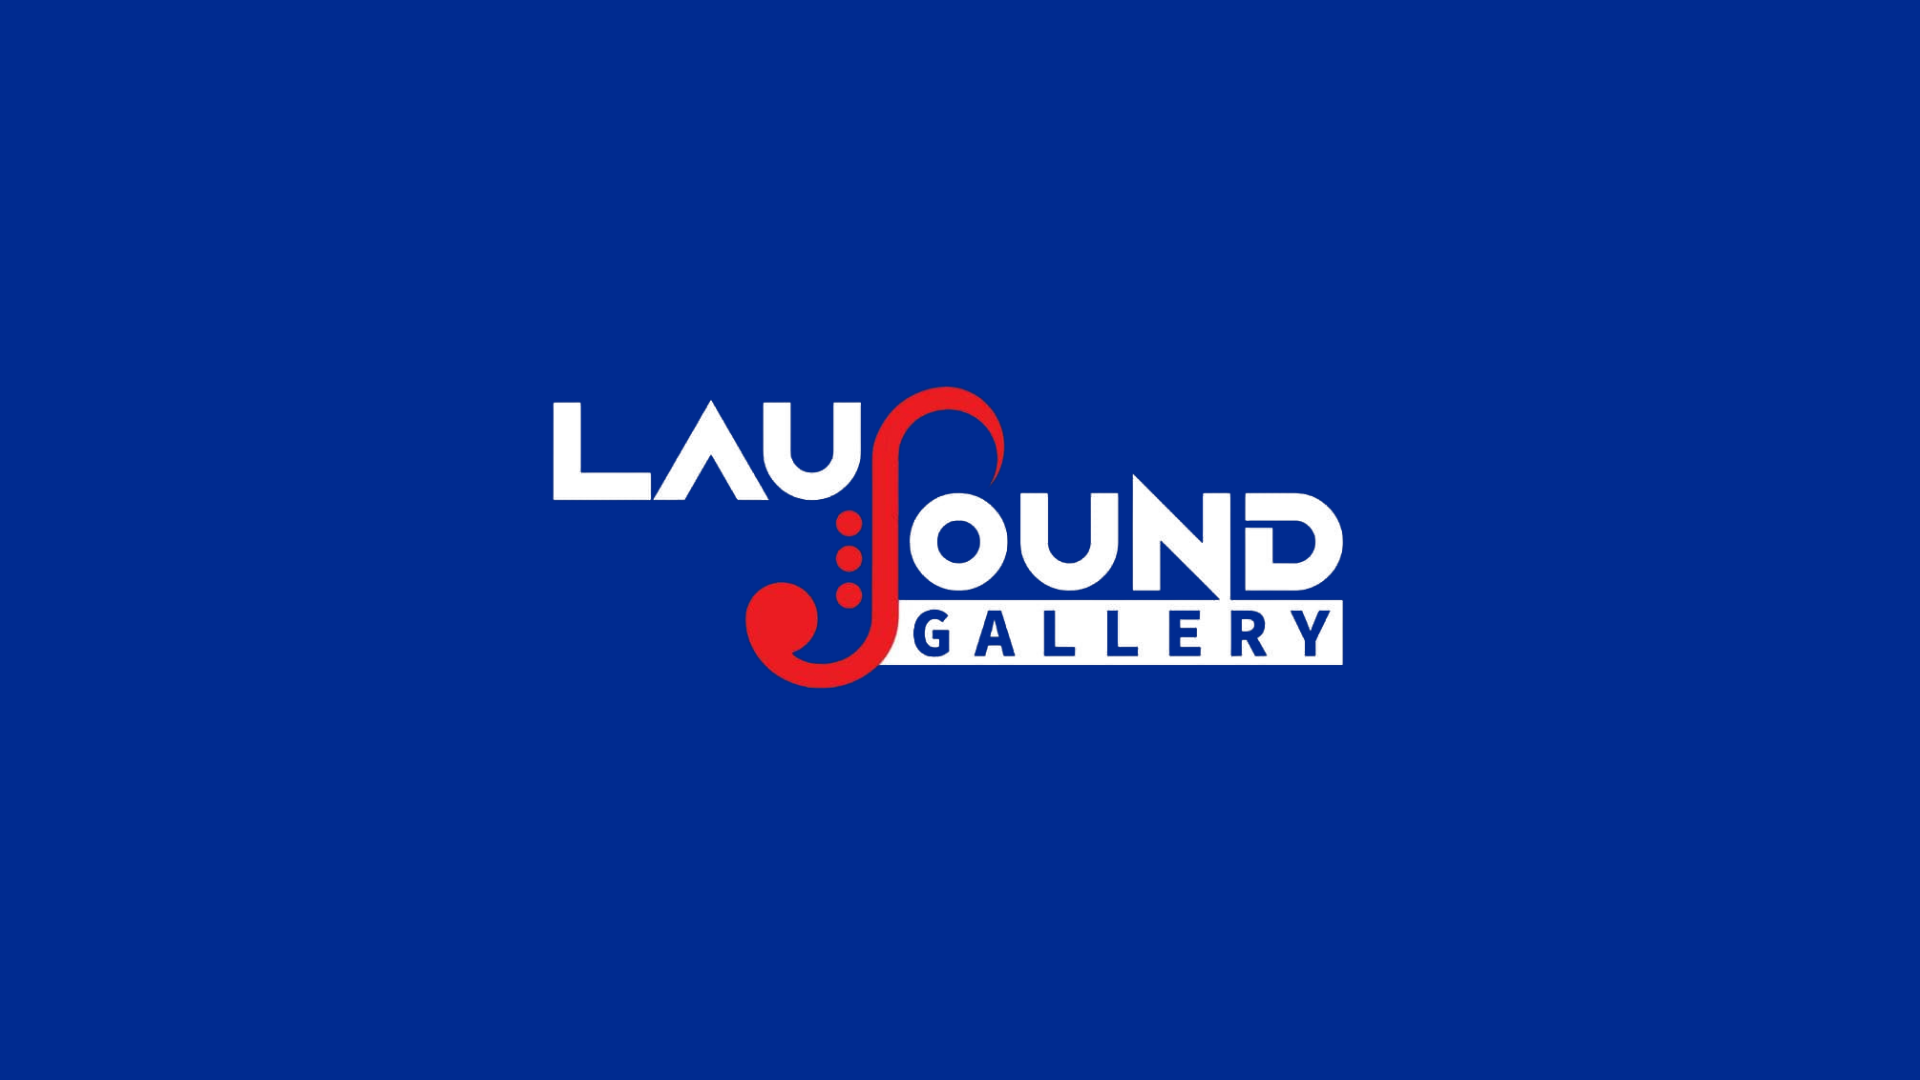 laus sound gallery logo blu